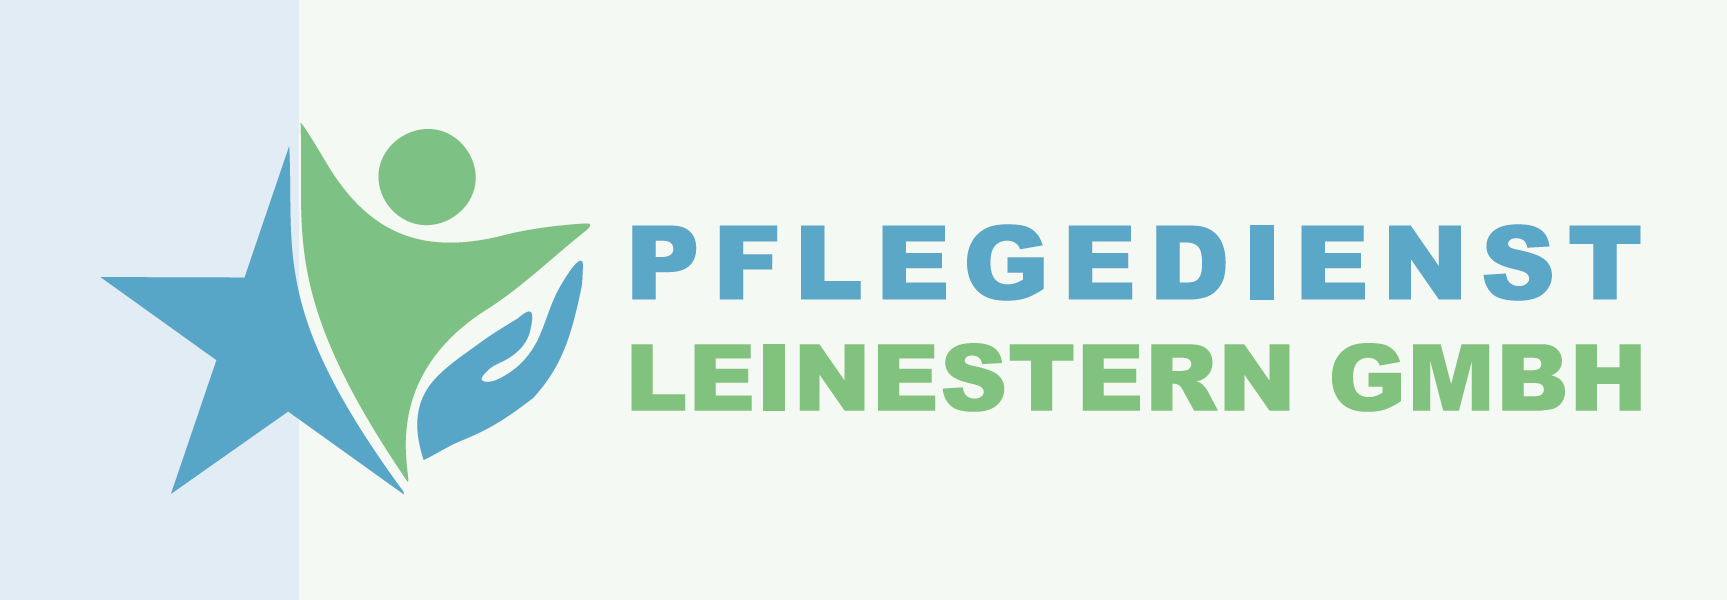 Pflegedienst Leinestern GmbH